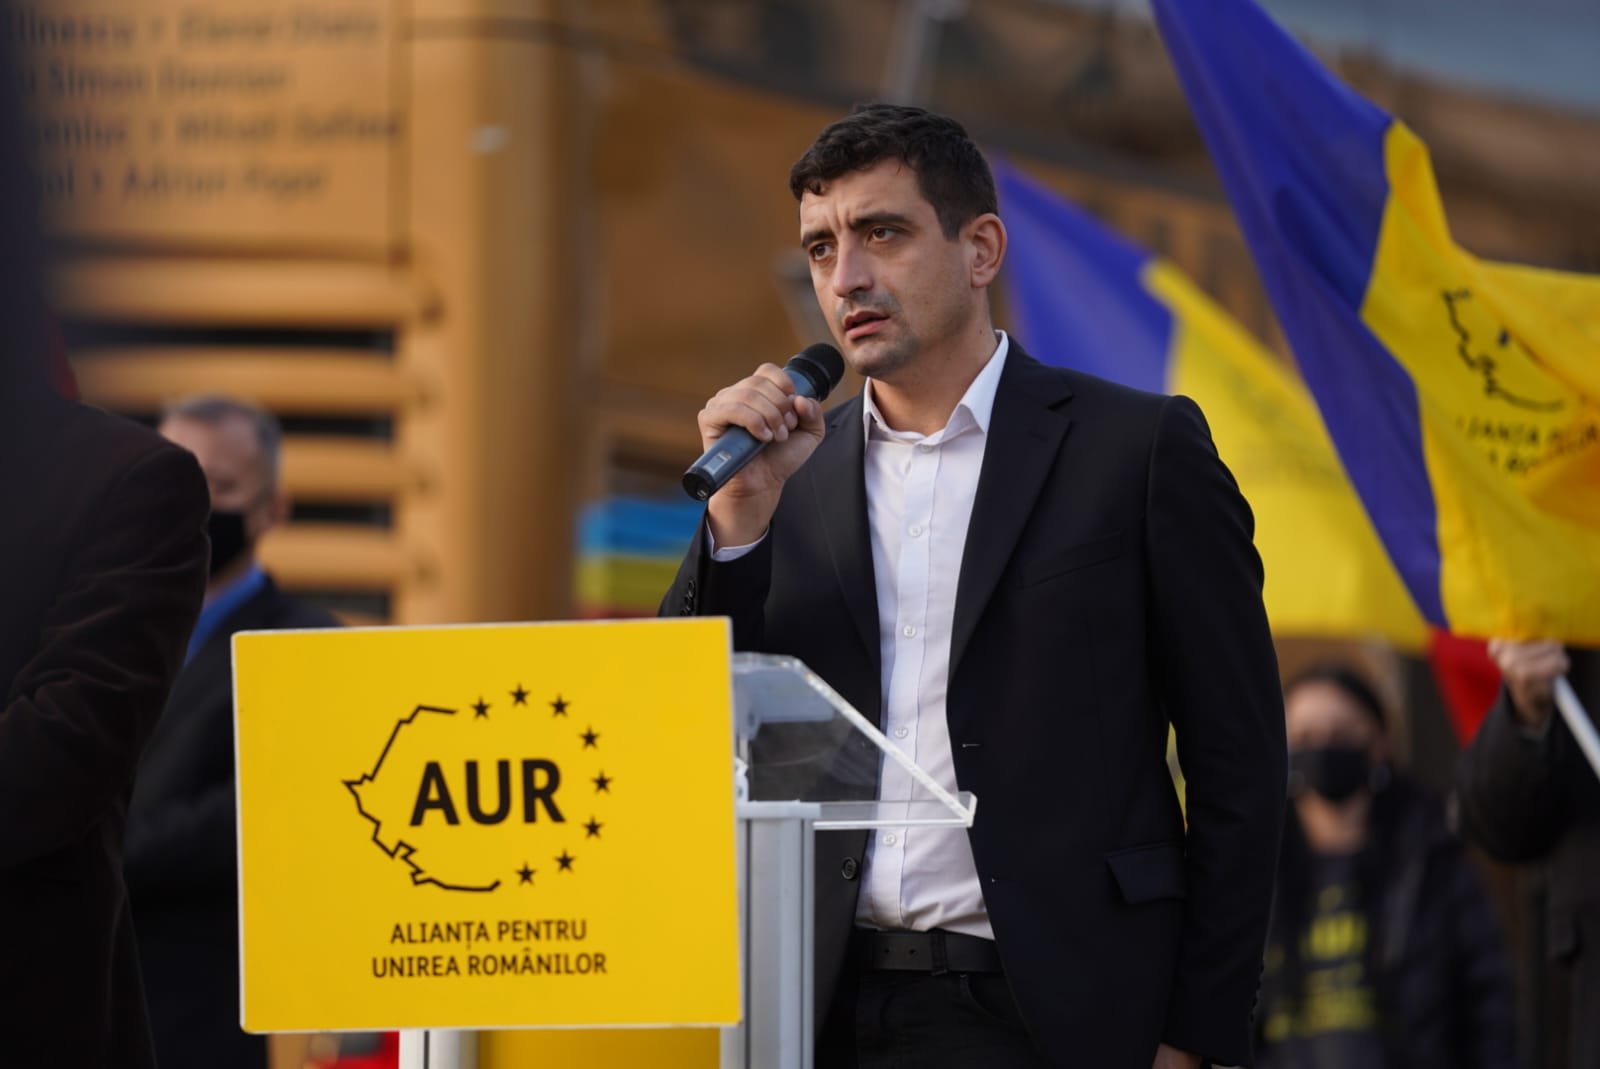  George Simion de la AUR anunţă că nu mai vrea să le ofere românilor circ şi demagogie